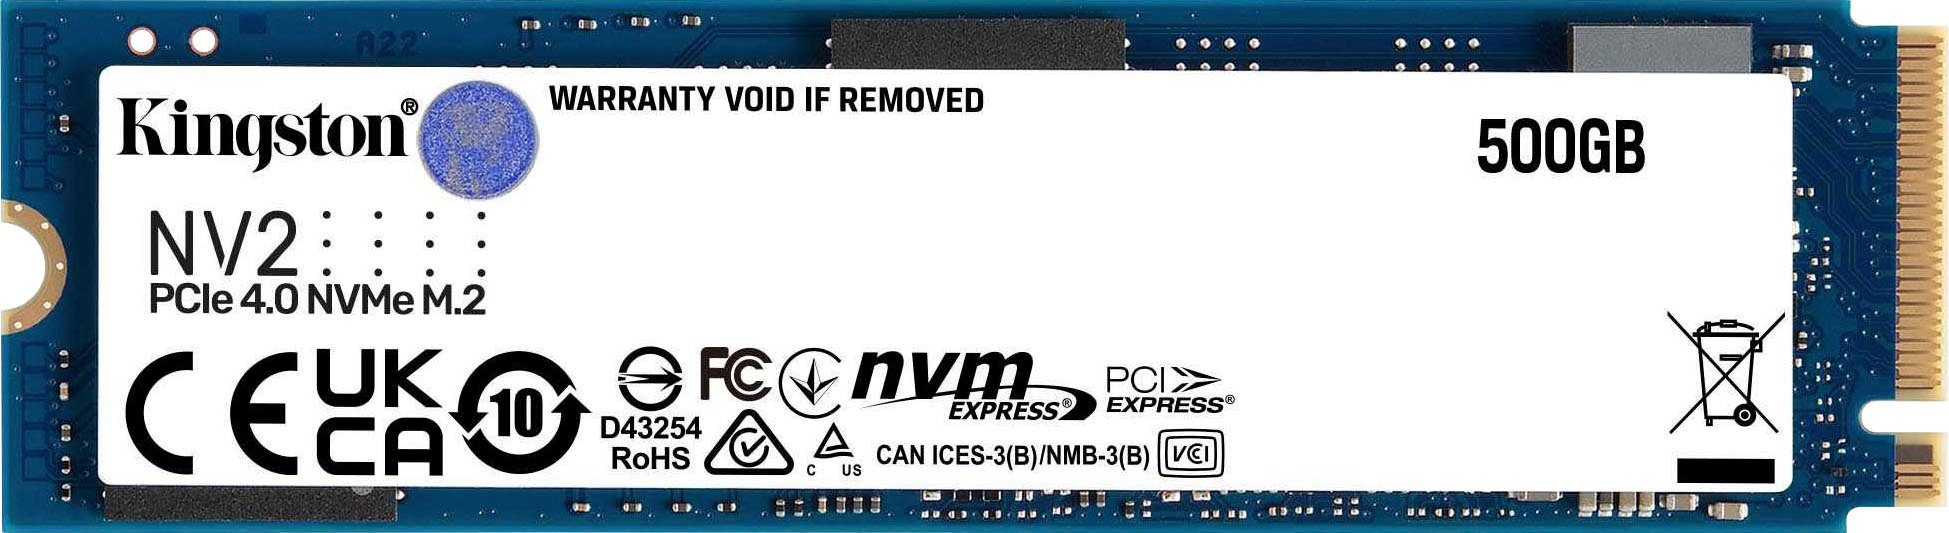 Kingston NV2 PCIe 4.0 NVMe SSD 500GB interne SSD (500 GB) 3500 MB/S Lesegeschwindigkeit, 2100 MB/S Schreibgeschwindigkeit